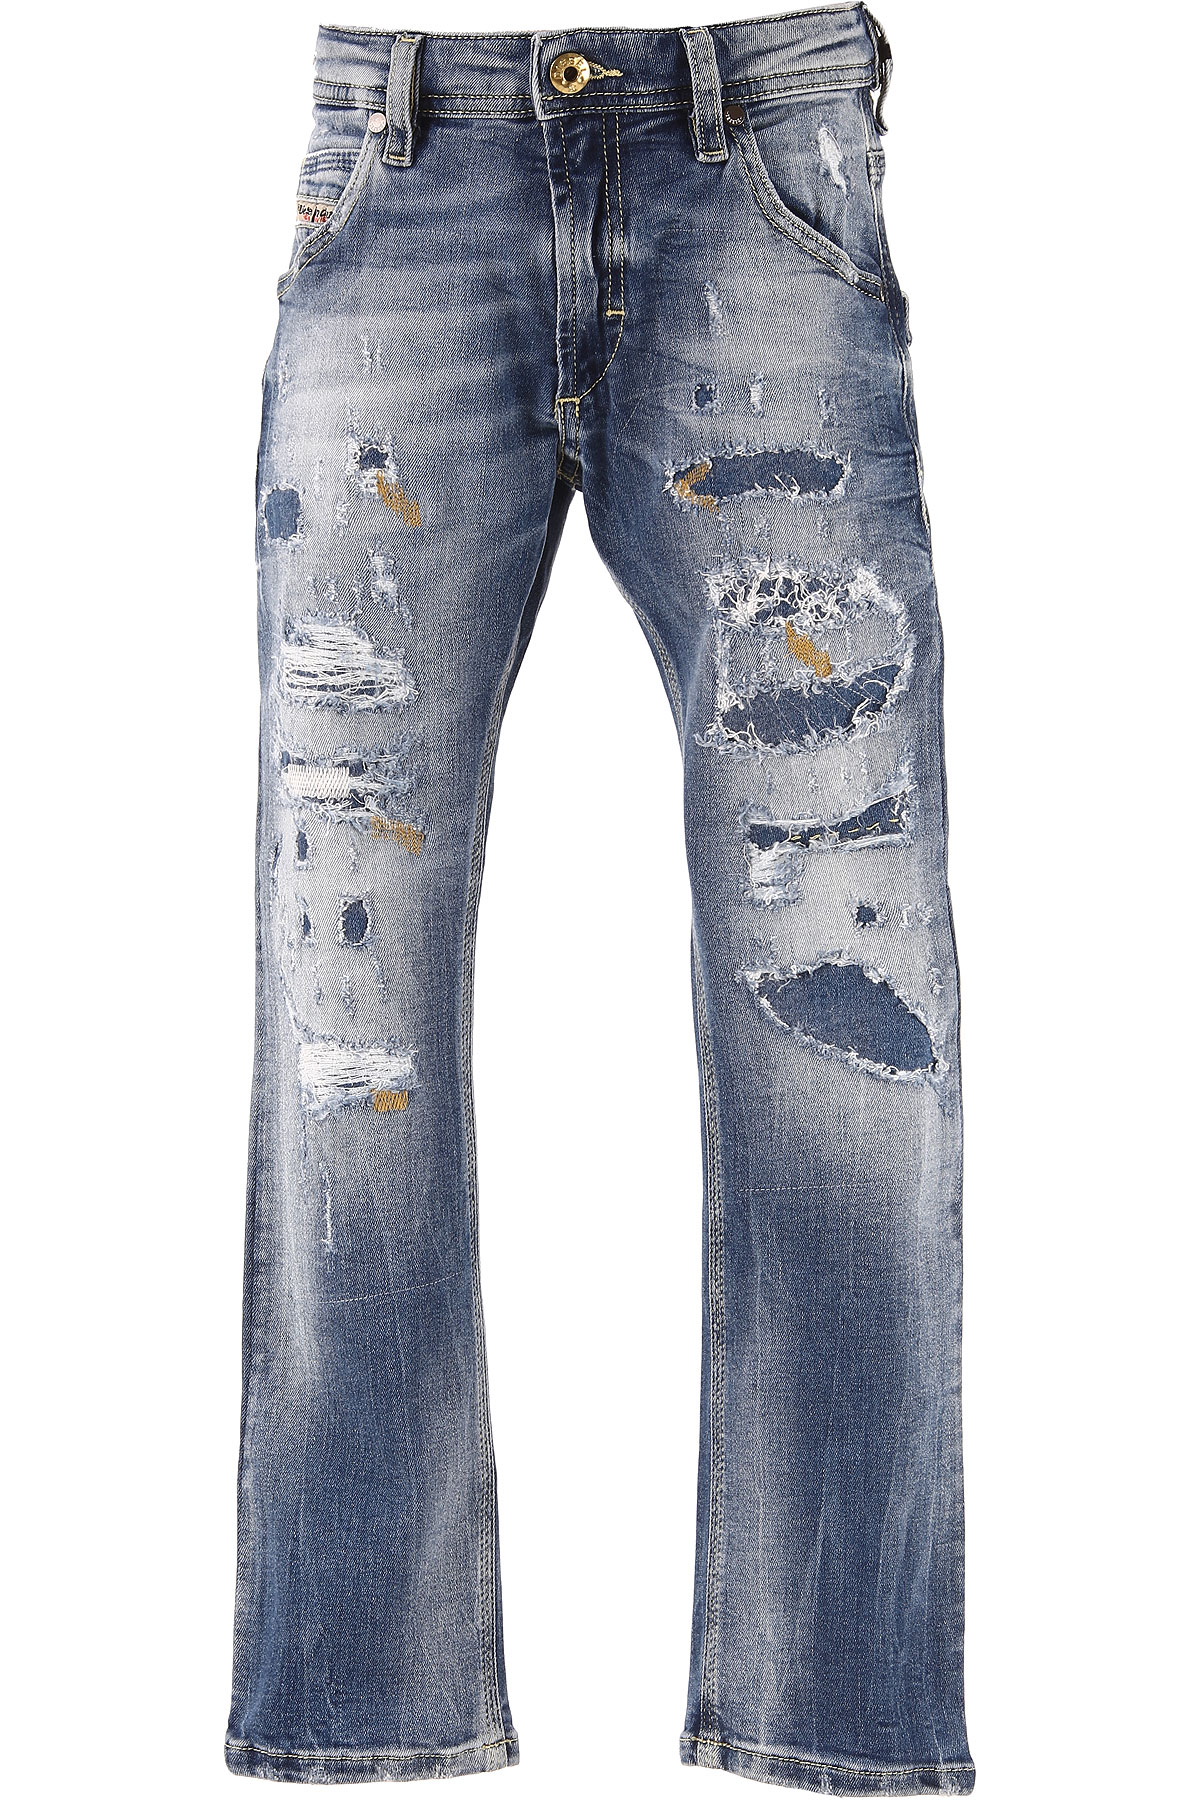 Diesel Jeans Enfant pour Garçon Outlet, Krooley J, Bleu jean, Coton, 2017, 13Y 4Y